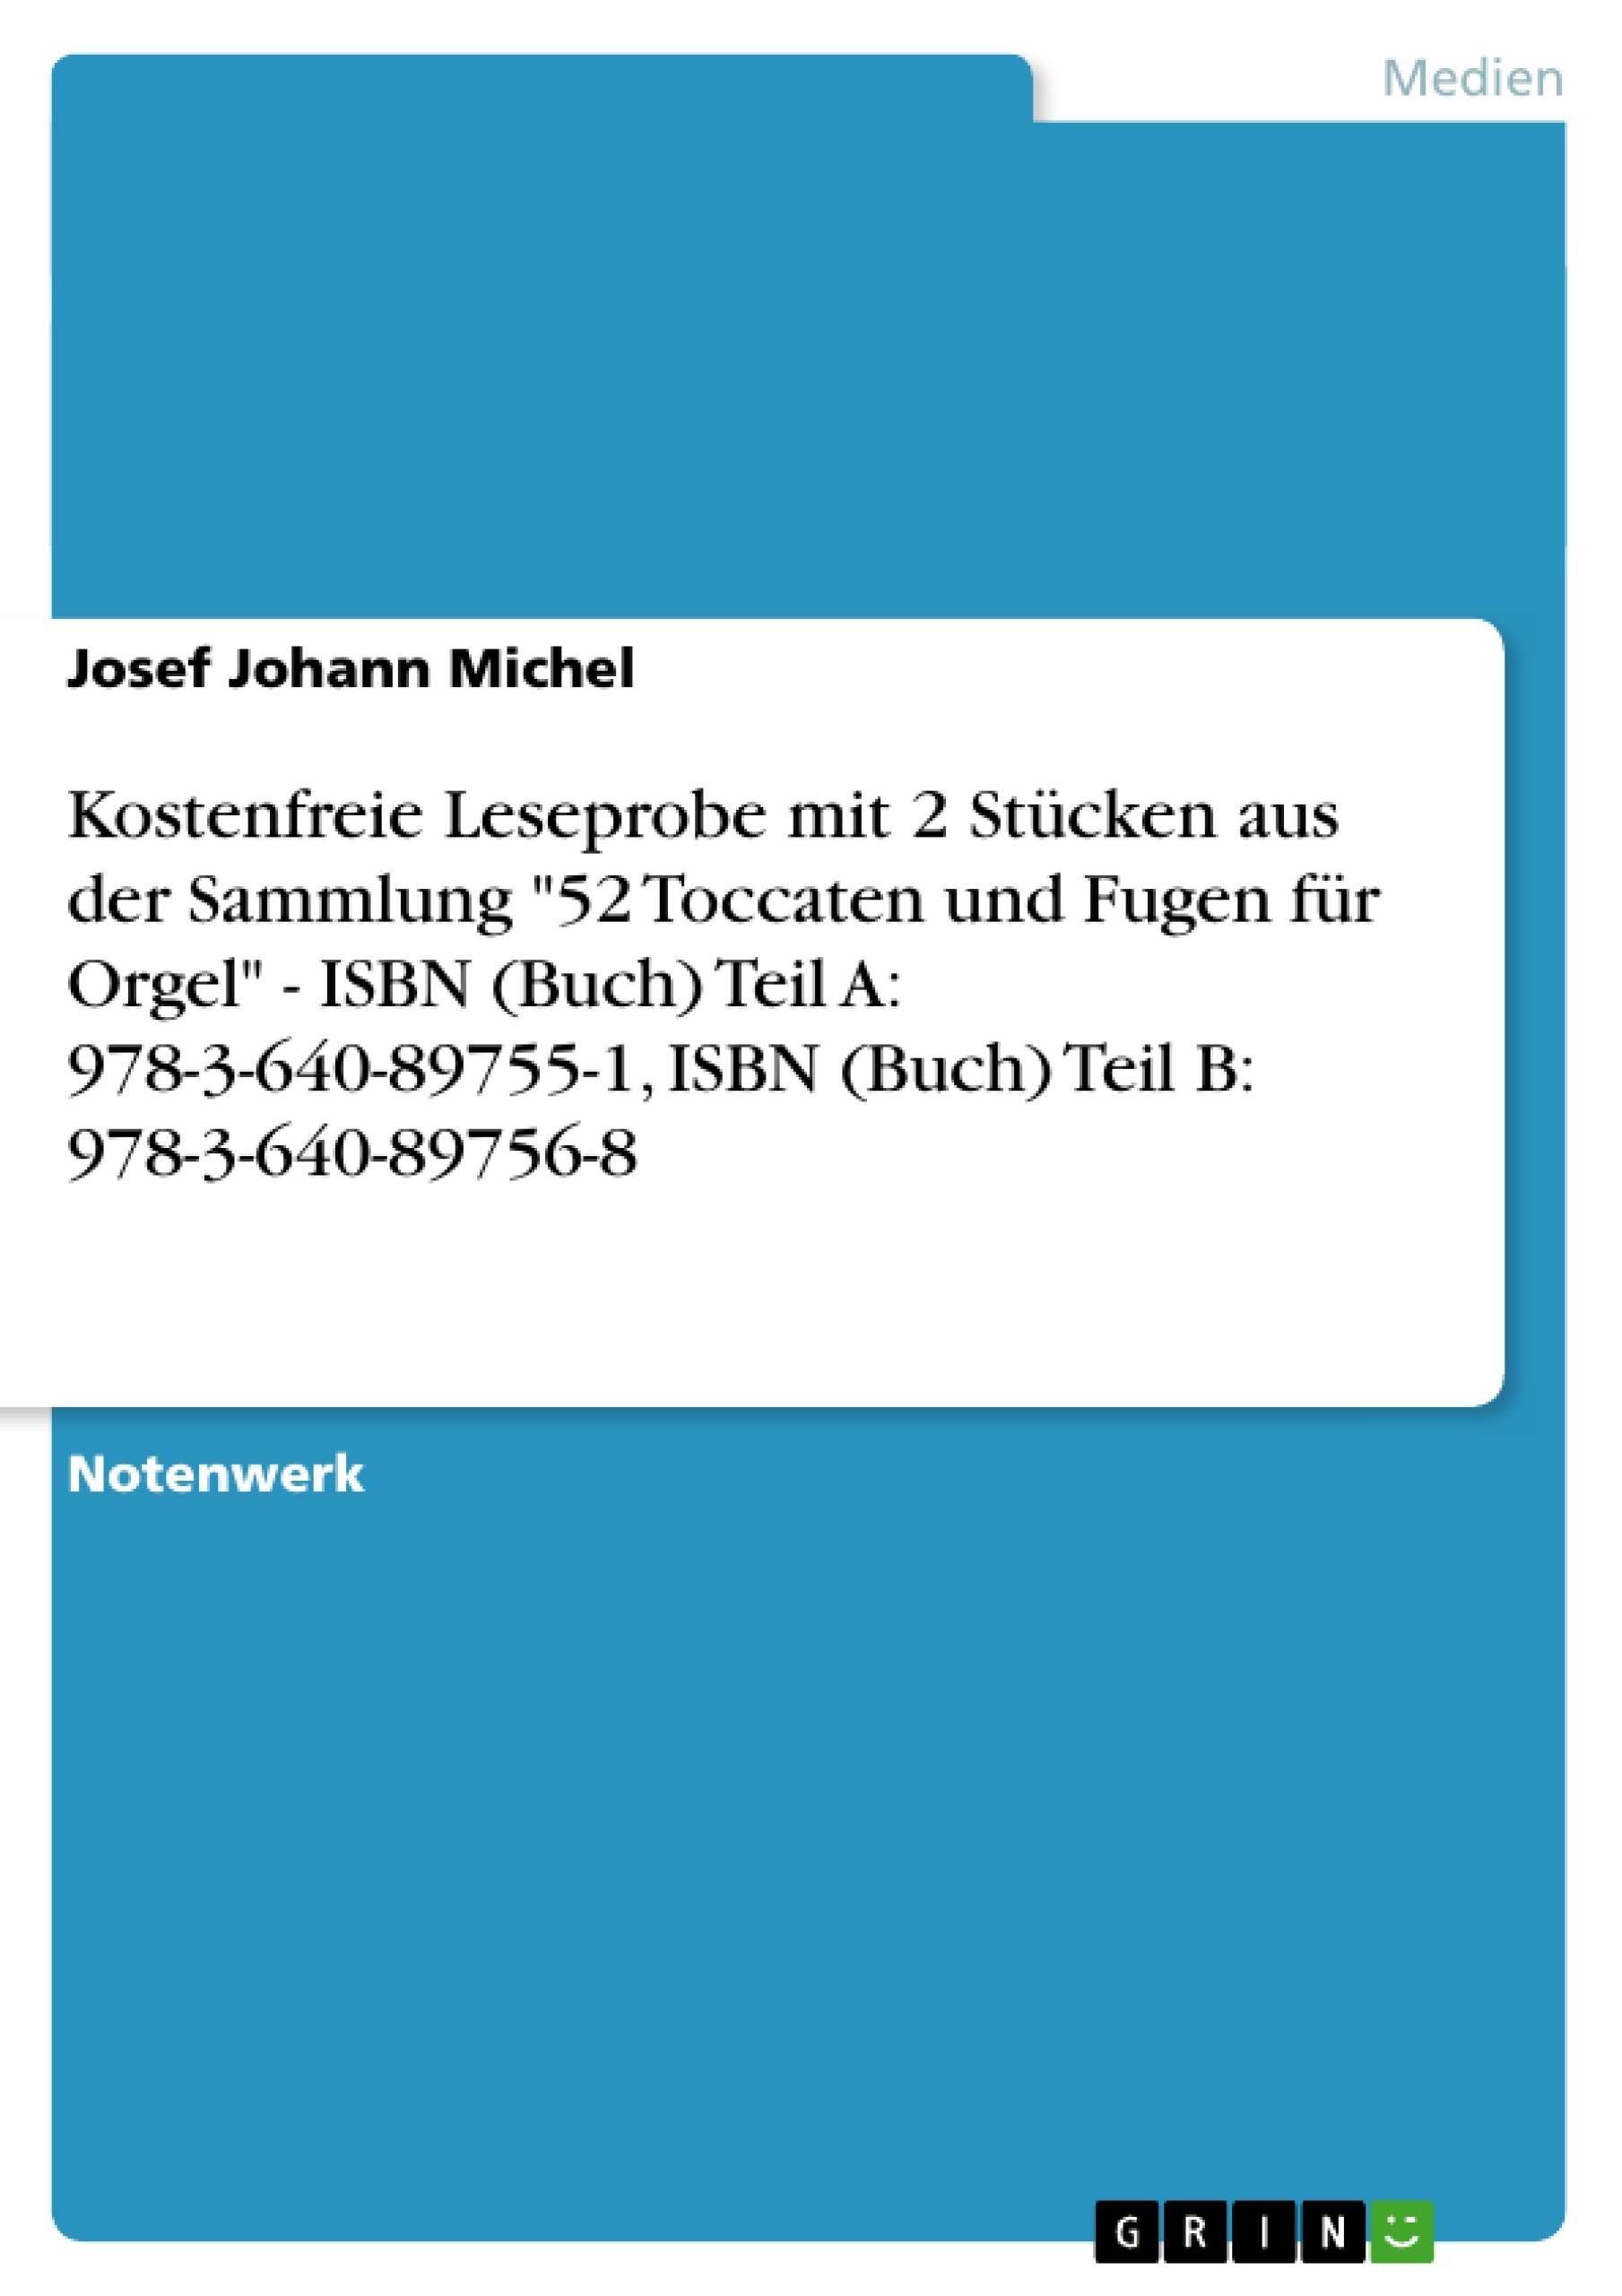 Title: Kostenfreie Leseprobe mit 2 Stücken aus der Sammlung "52 Toccaten und Fugen für Orgel" - ISBN (Buch) Teil A: 978-3-640-89755-1, ISBN (Buch) Teil B: 978-3-640-89756-8